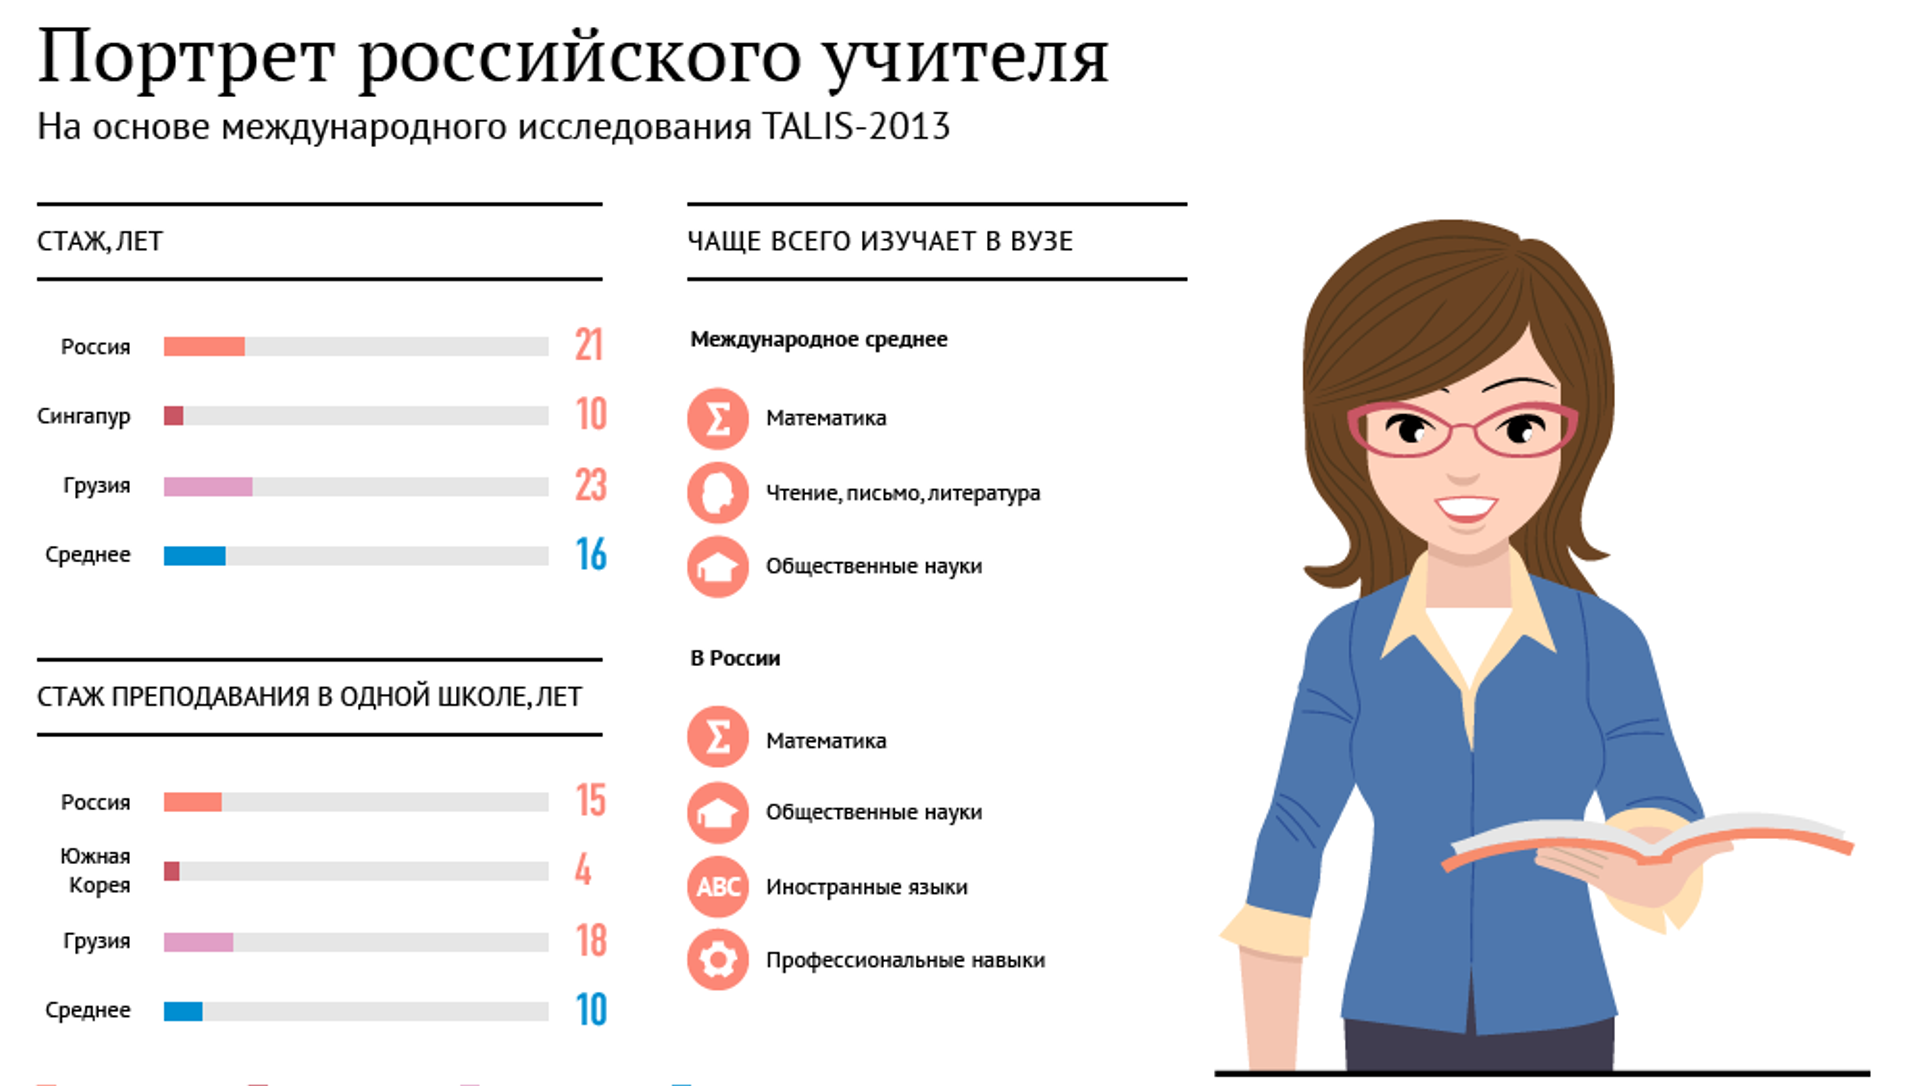 Социальный портрет российского учителя